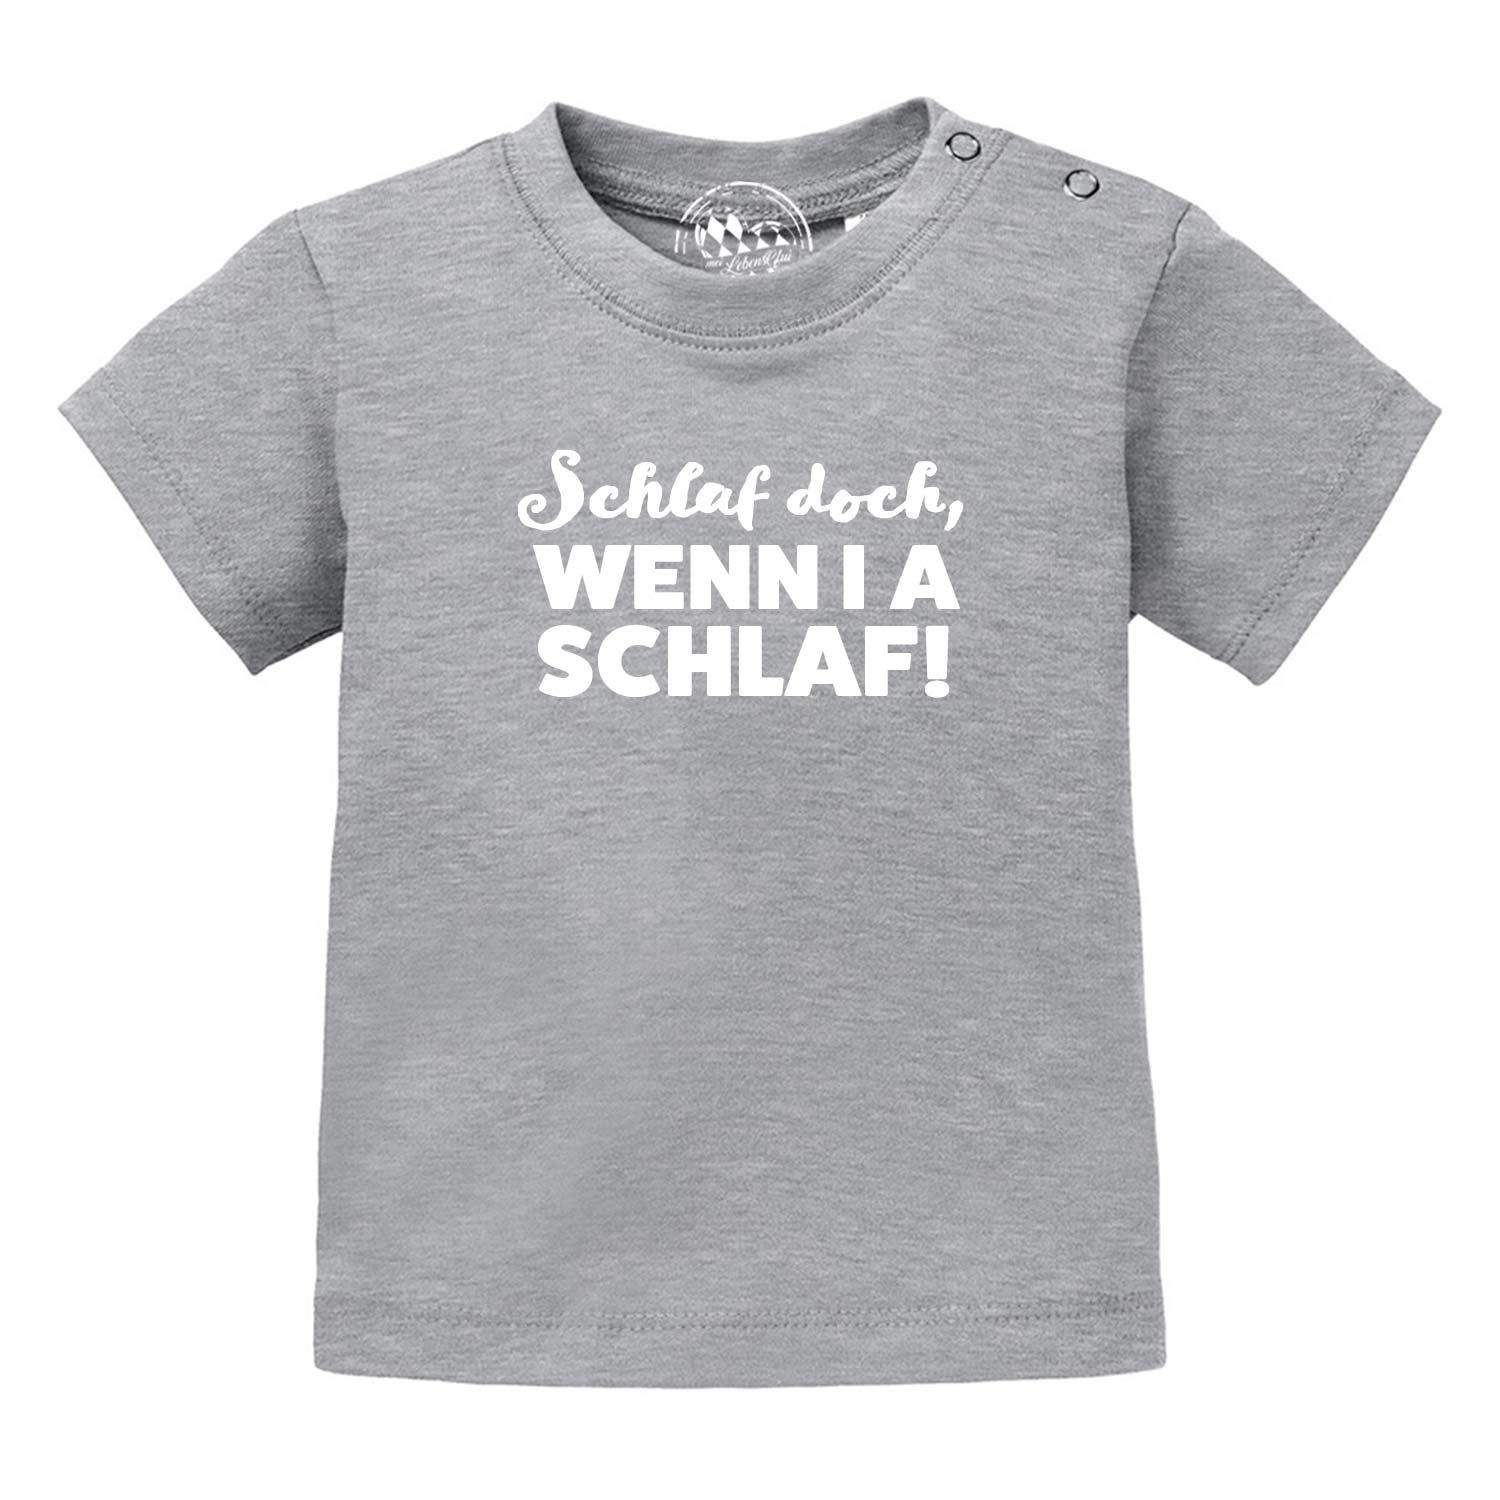 Baby T-Shirt "Schlaf, wenn i a schlaf!" - bavariashop - mei LebensGfui